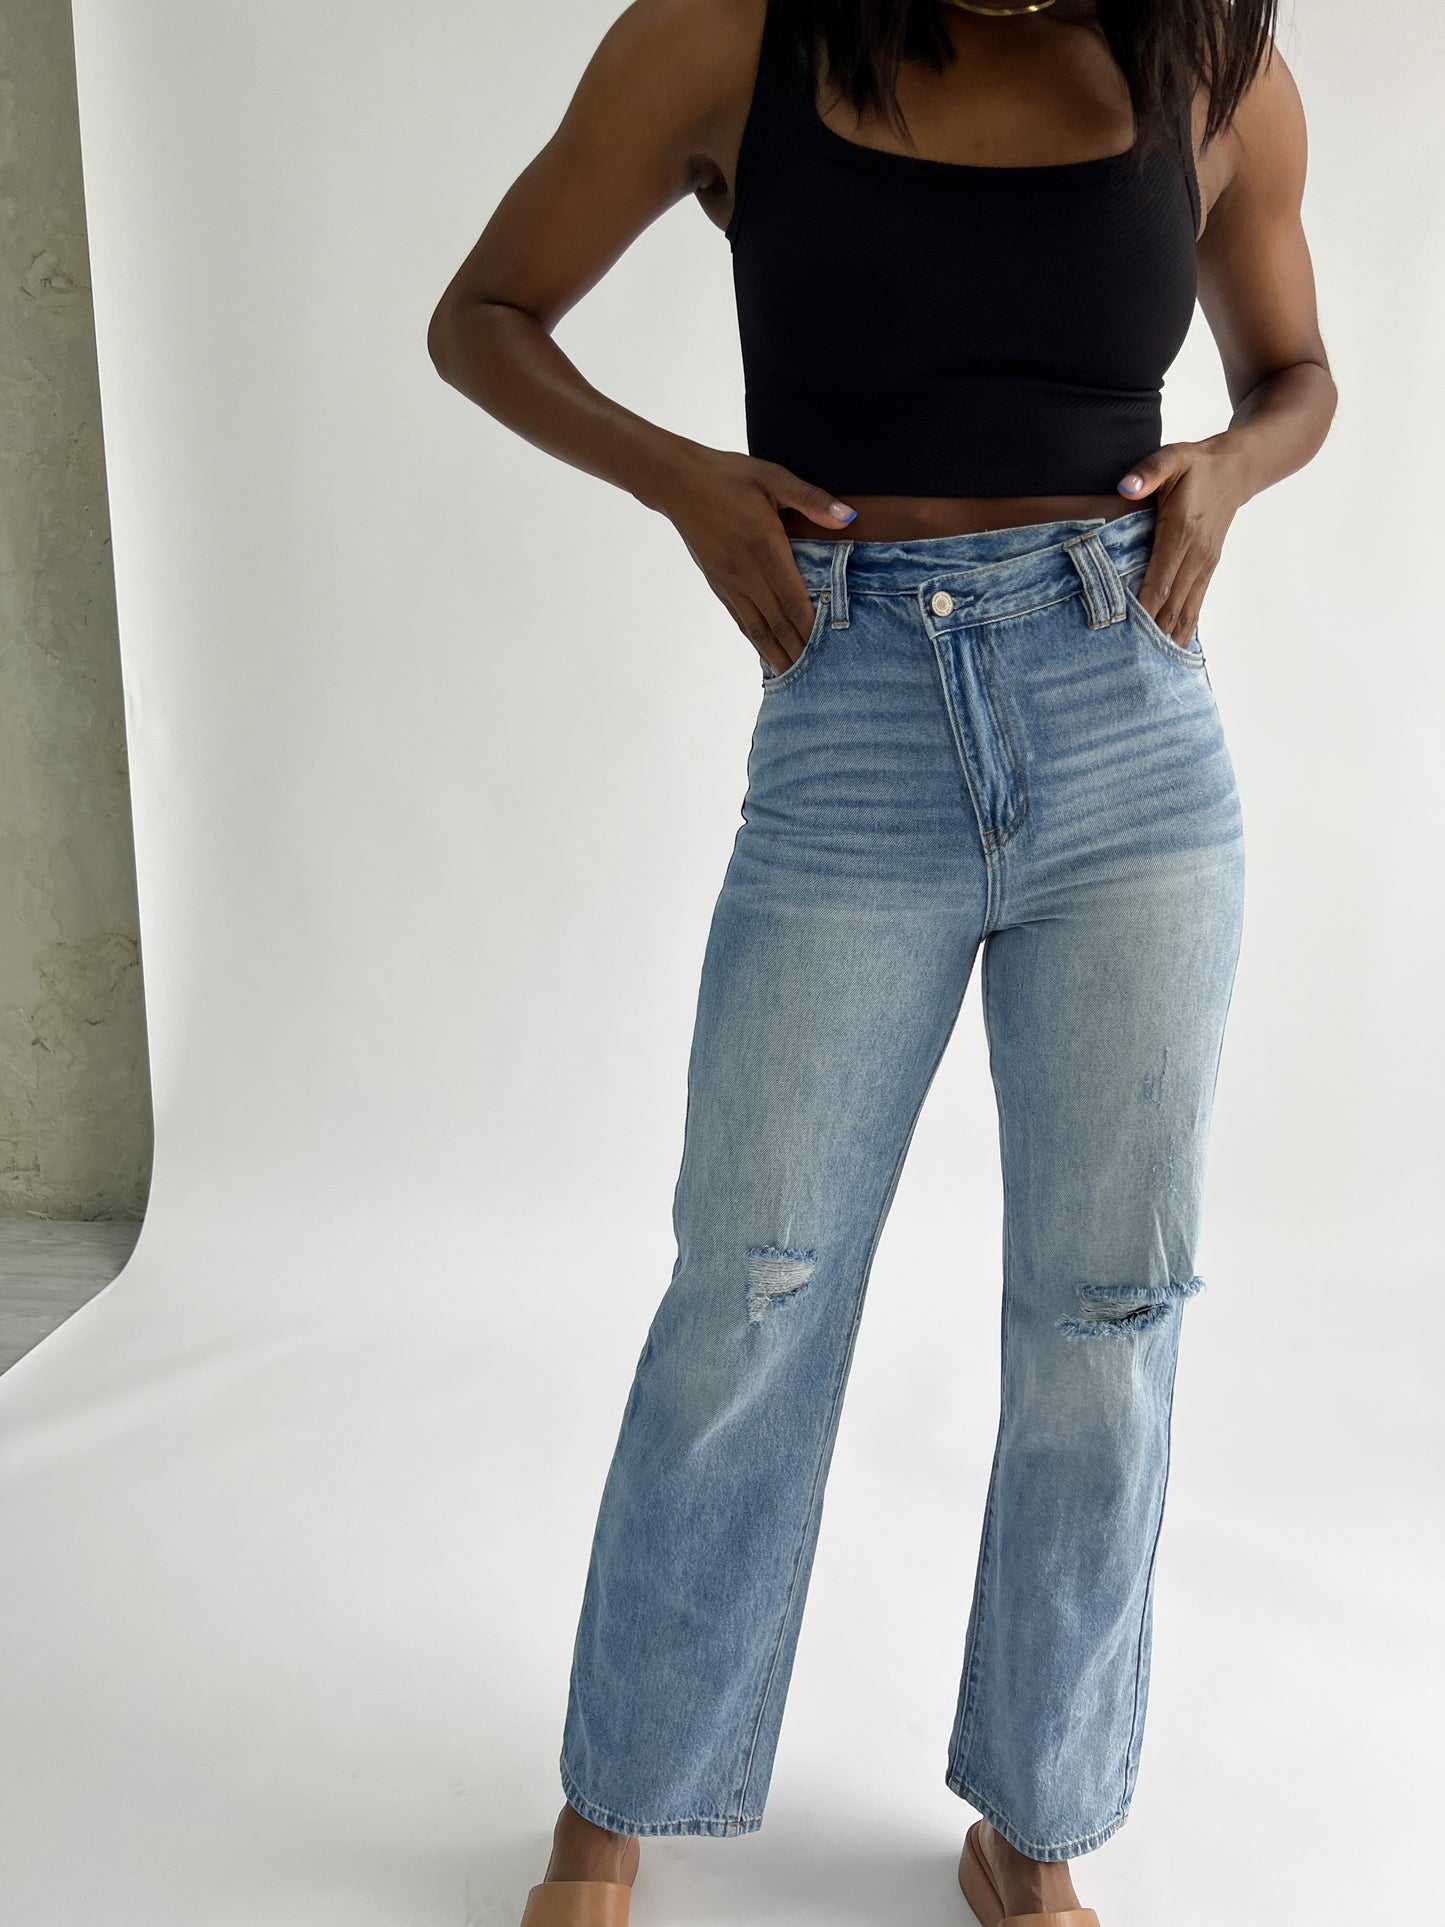 Marina Crossover Jeans